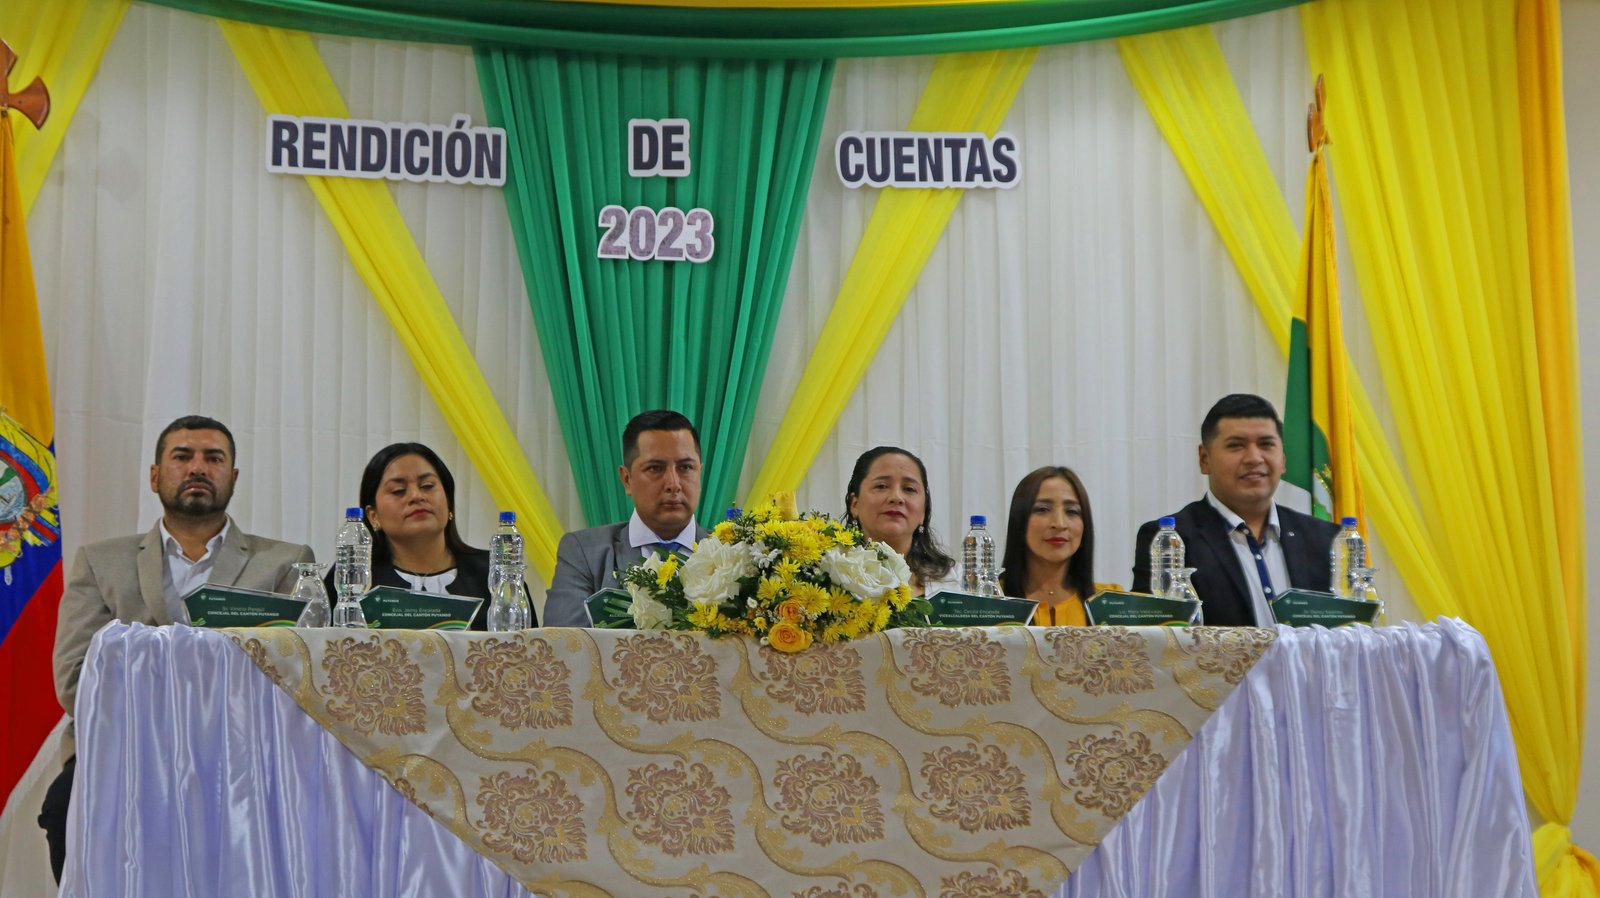 El evento fue presidido por el alcalde, Ignacio Vivar Jara y los concejales del cantón Puyango.